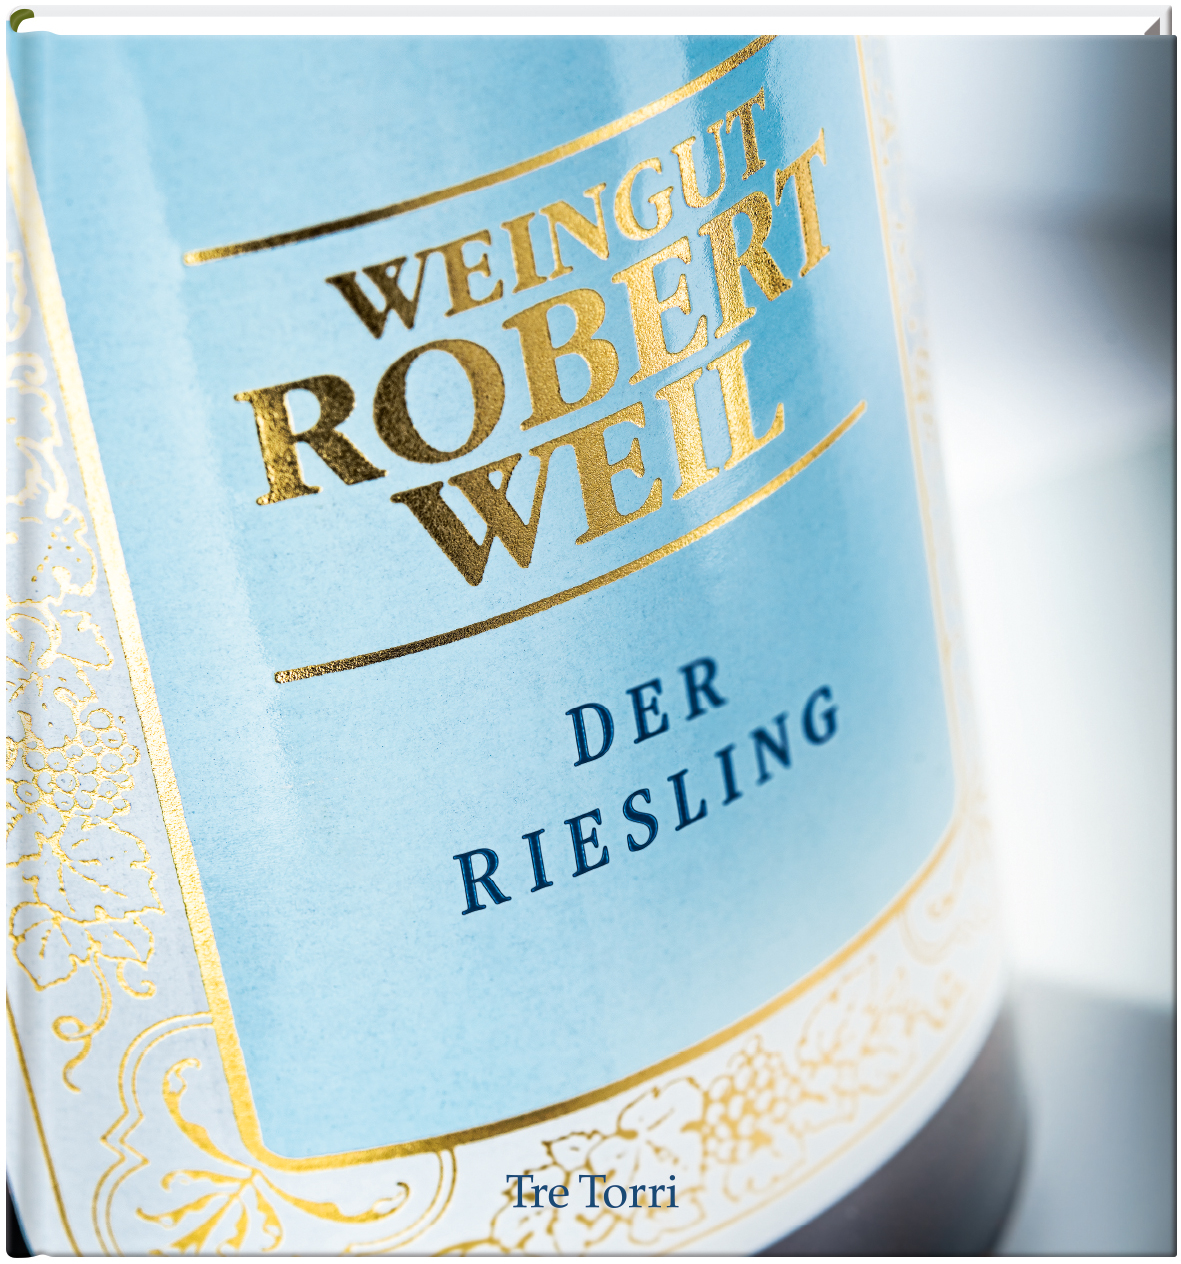 Weingut Robert Weil - Der Riesling